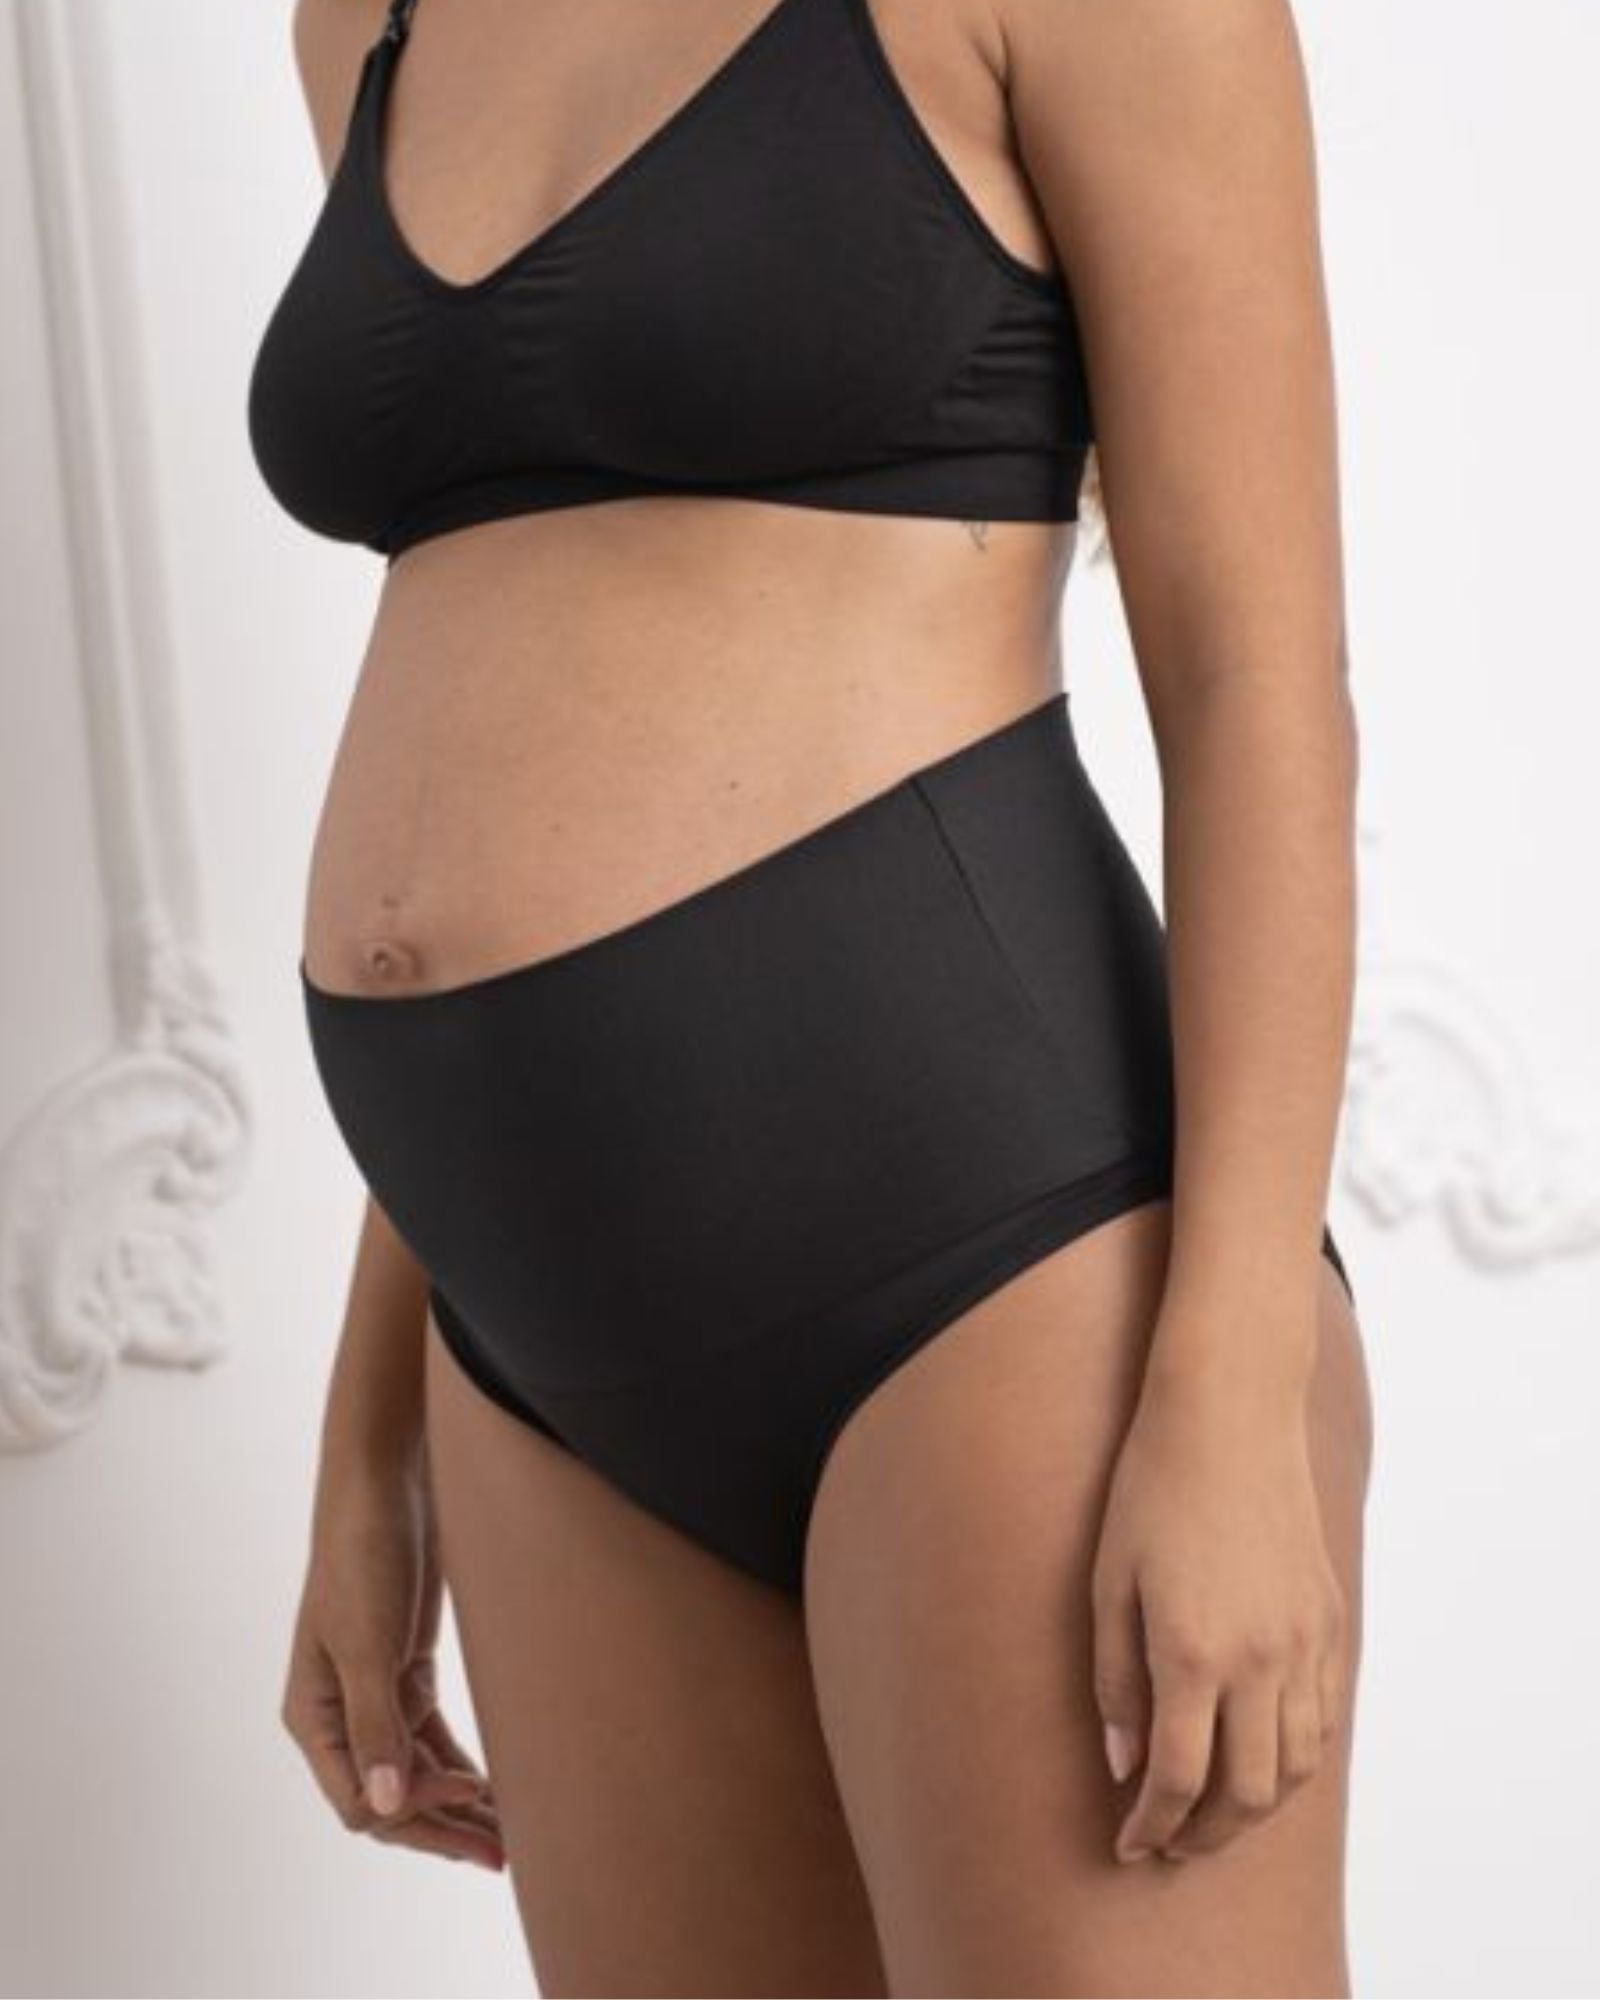 Best Maternity Underwear: Top 10 Pregnancy Underwear Reviewed